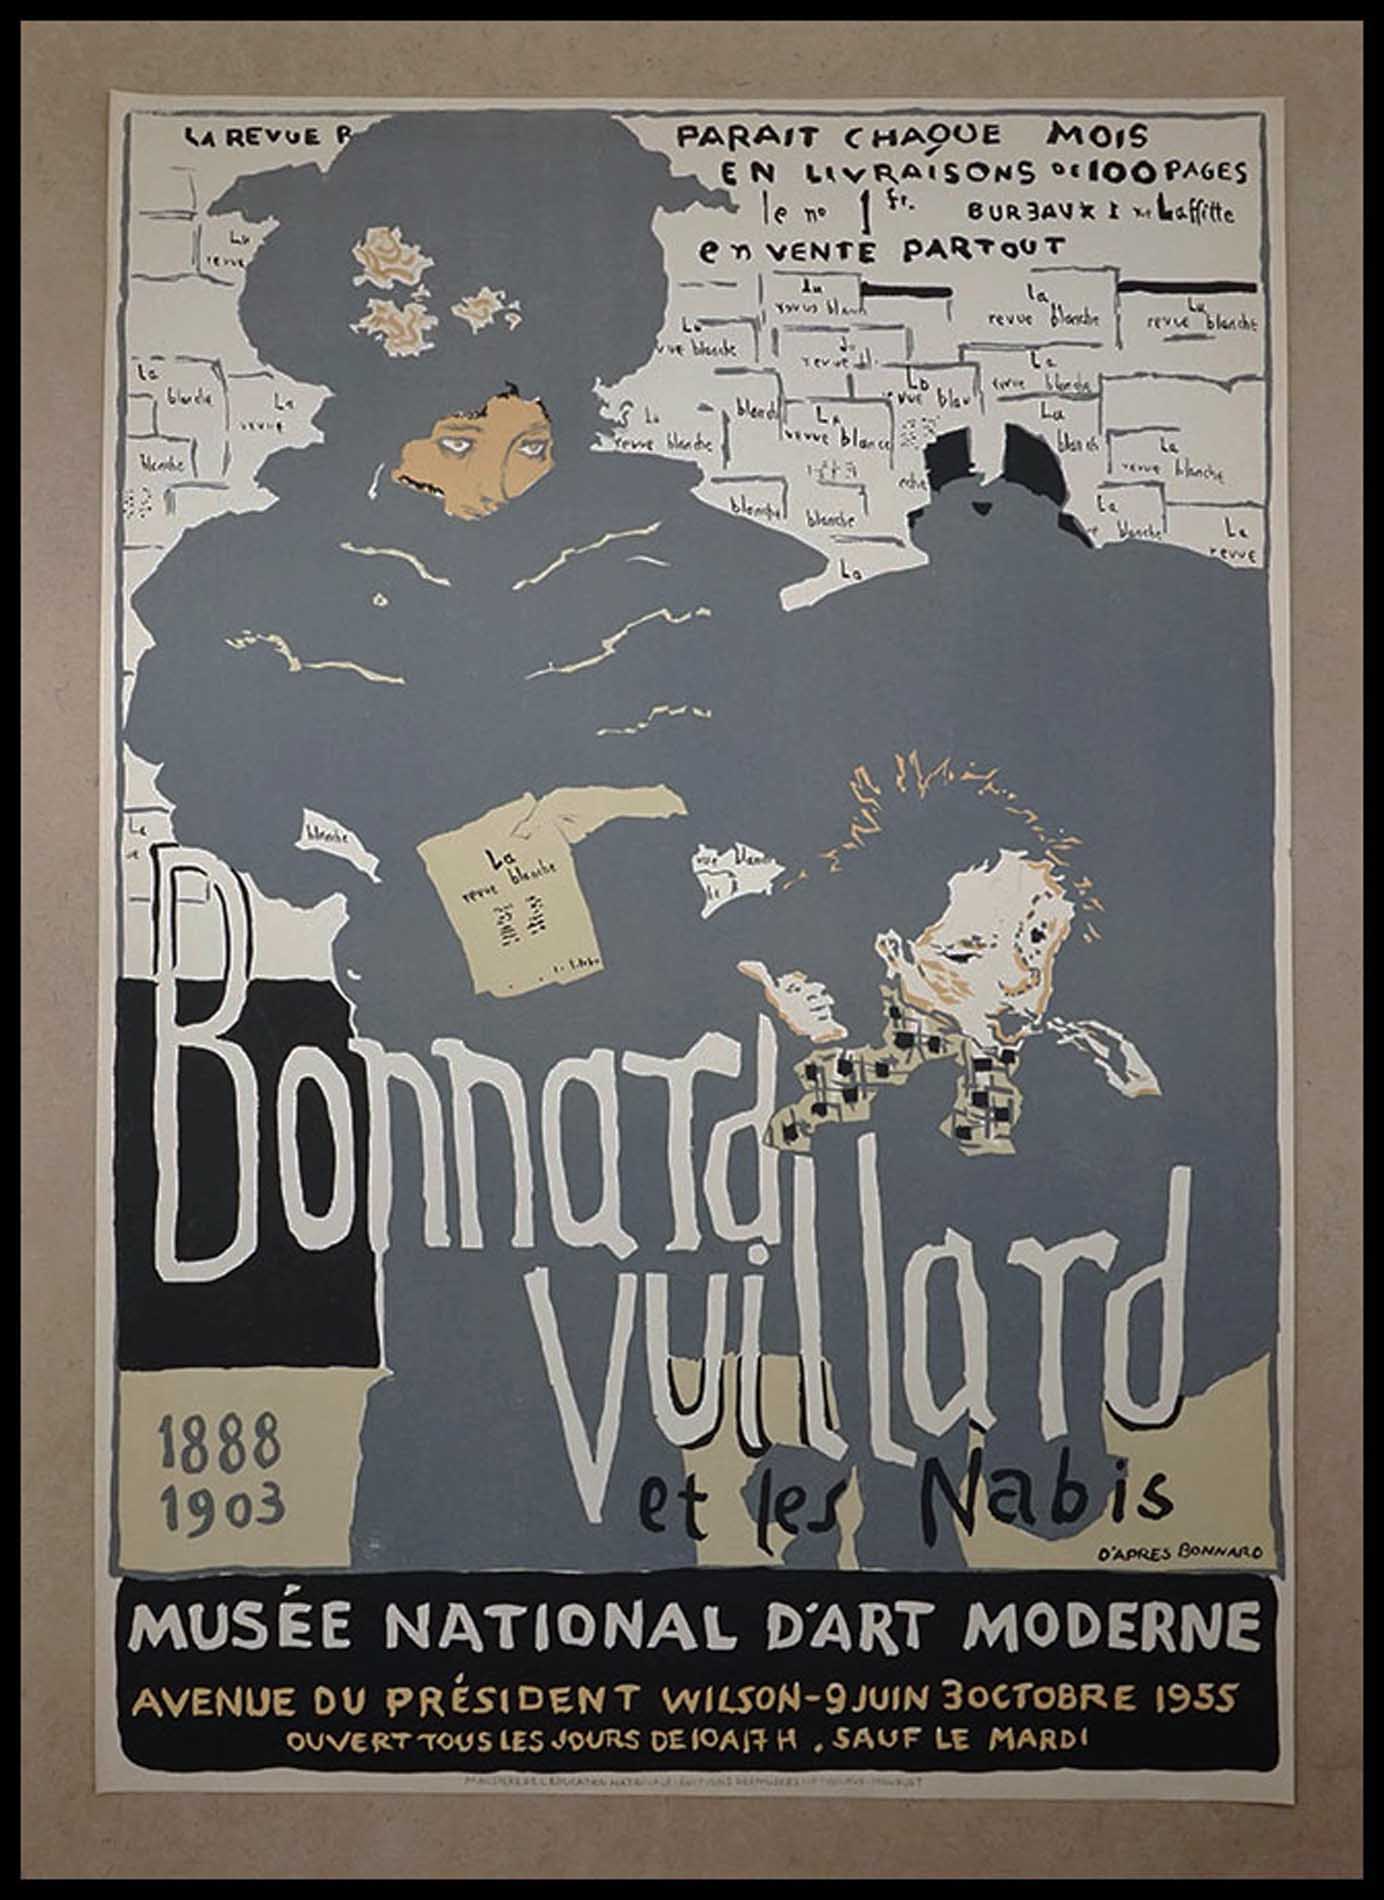 Bonnard, Vuillard et les Nabis, Musee national d'Art moderne